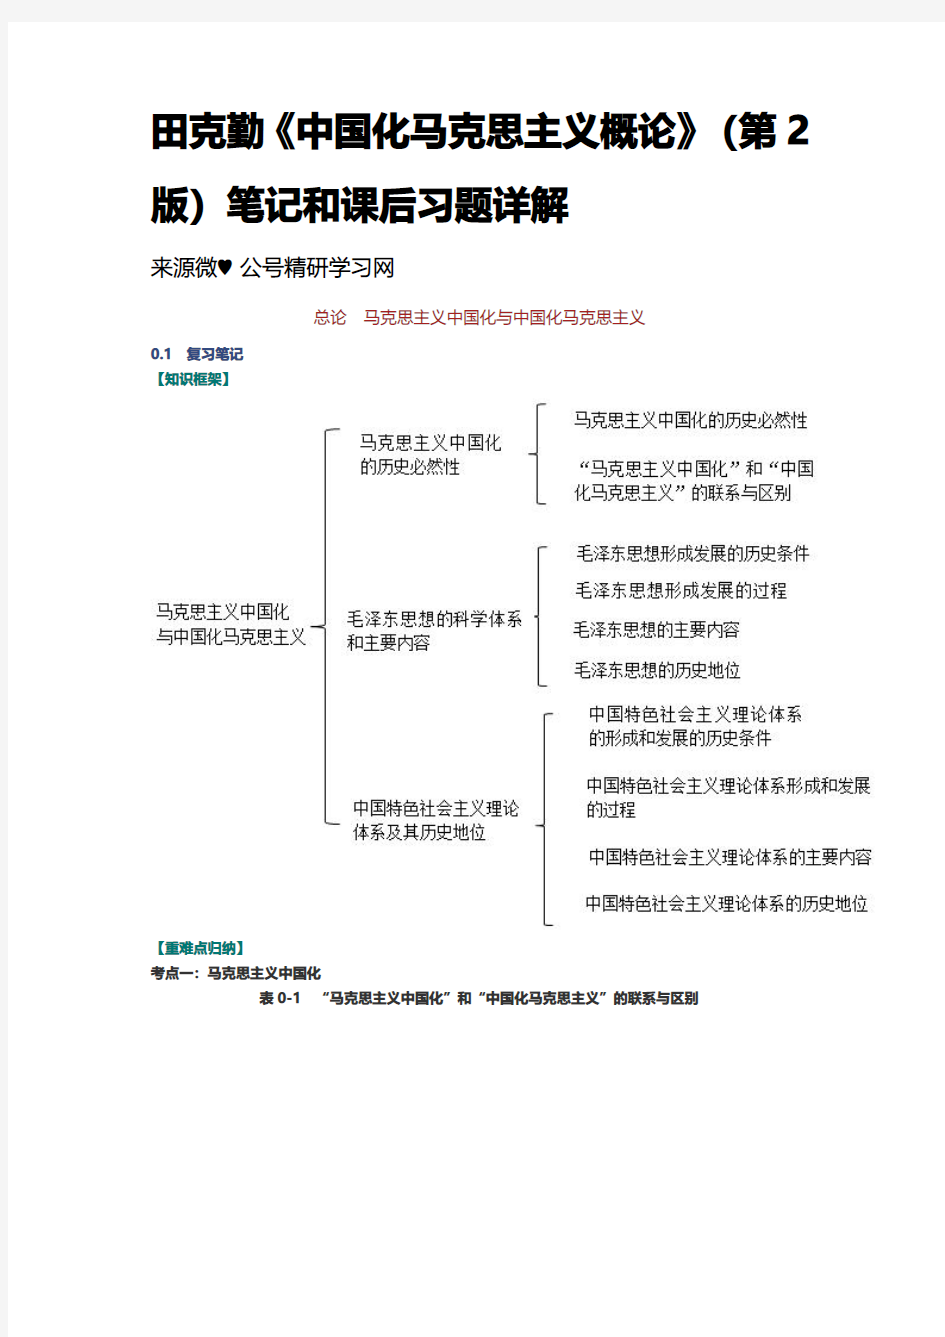 田克勤《中国化马克思主义概论》(第2版)笔记和课后习题详解 